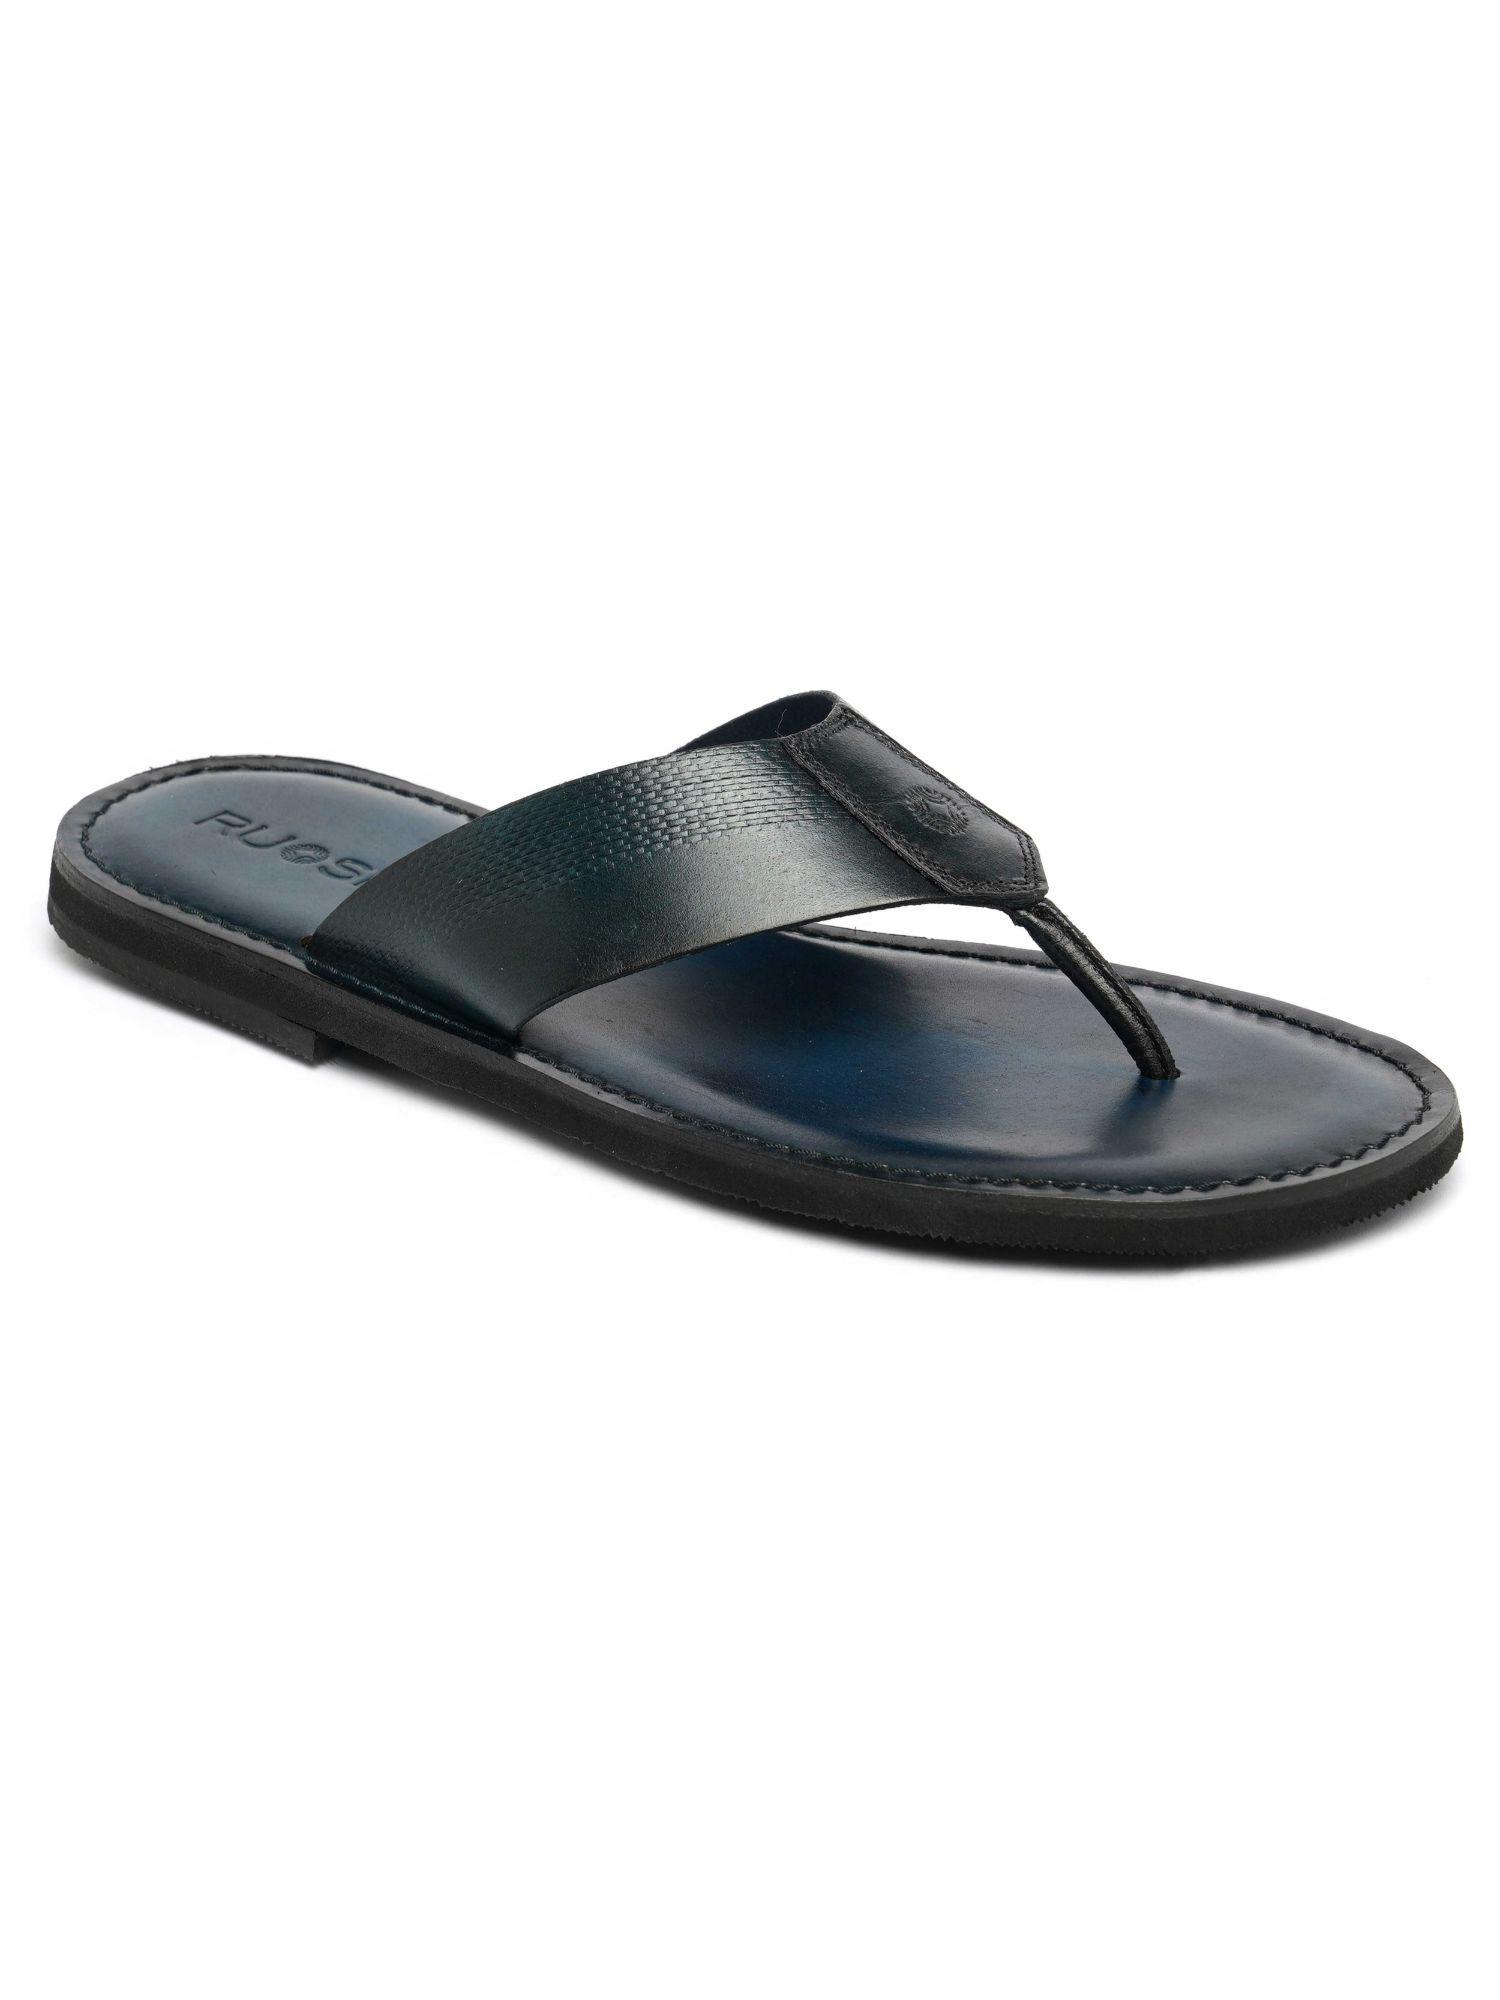 mens-footwear-open-slipper-black